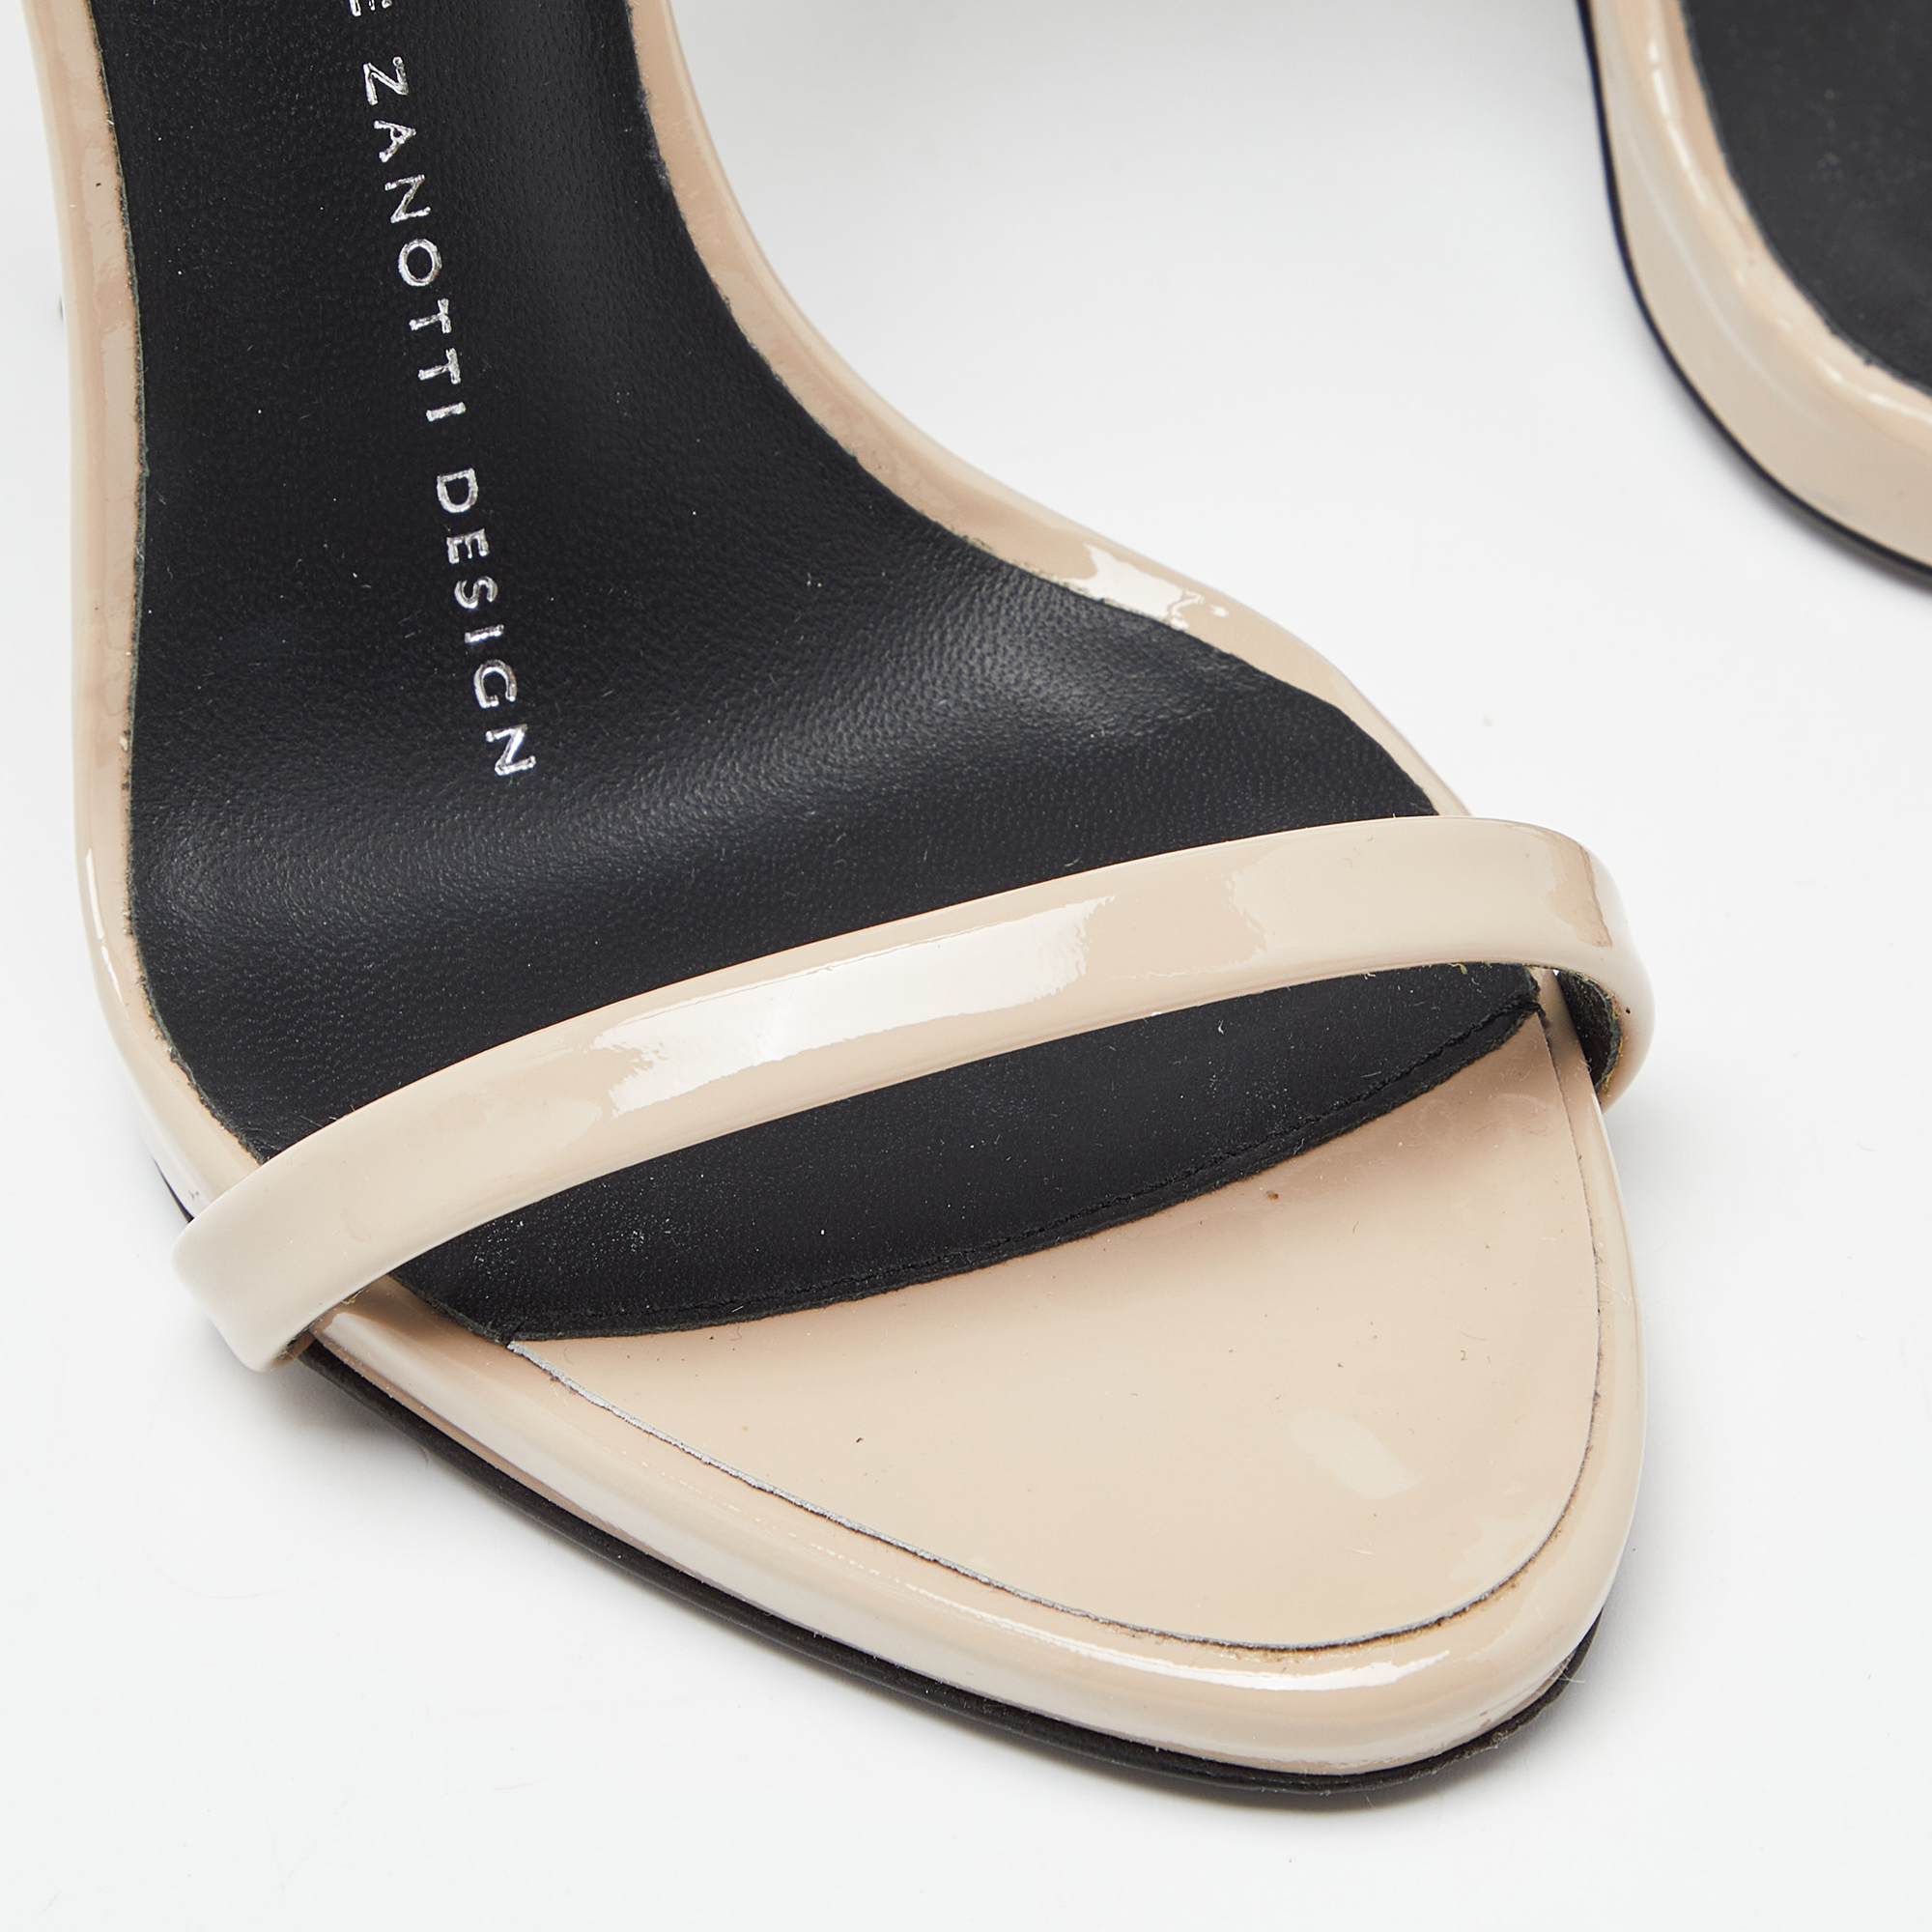 Giuseppe Zanotti Beige Patent Leather Coline Strap Sandals Size 35